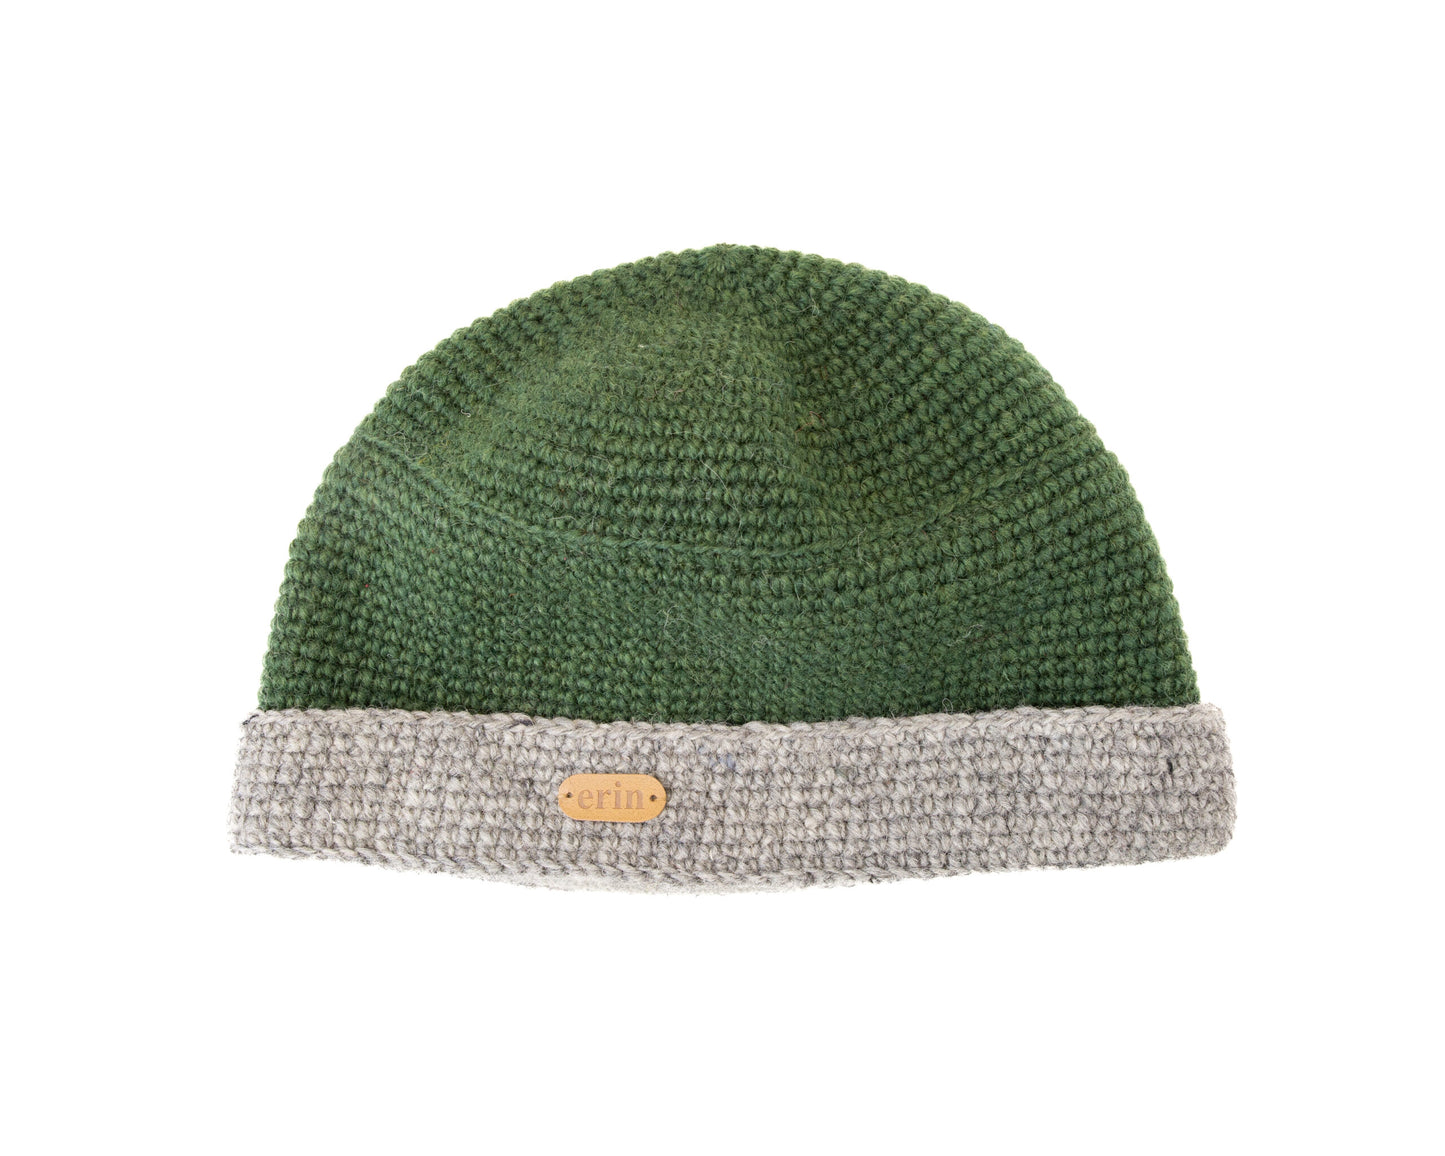 Crochet Turn Up Hat - Green w/ Oatmeal